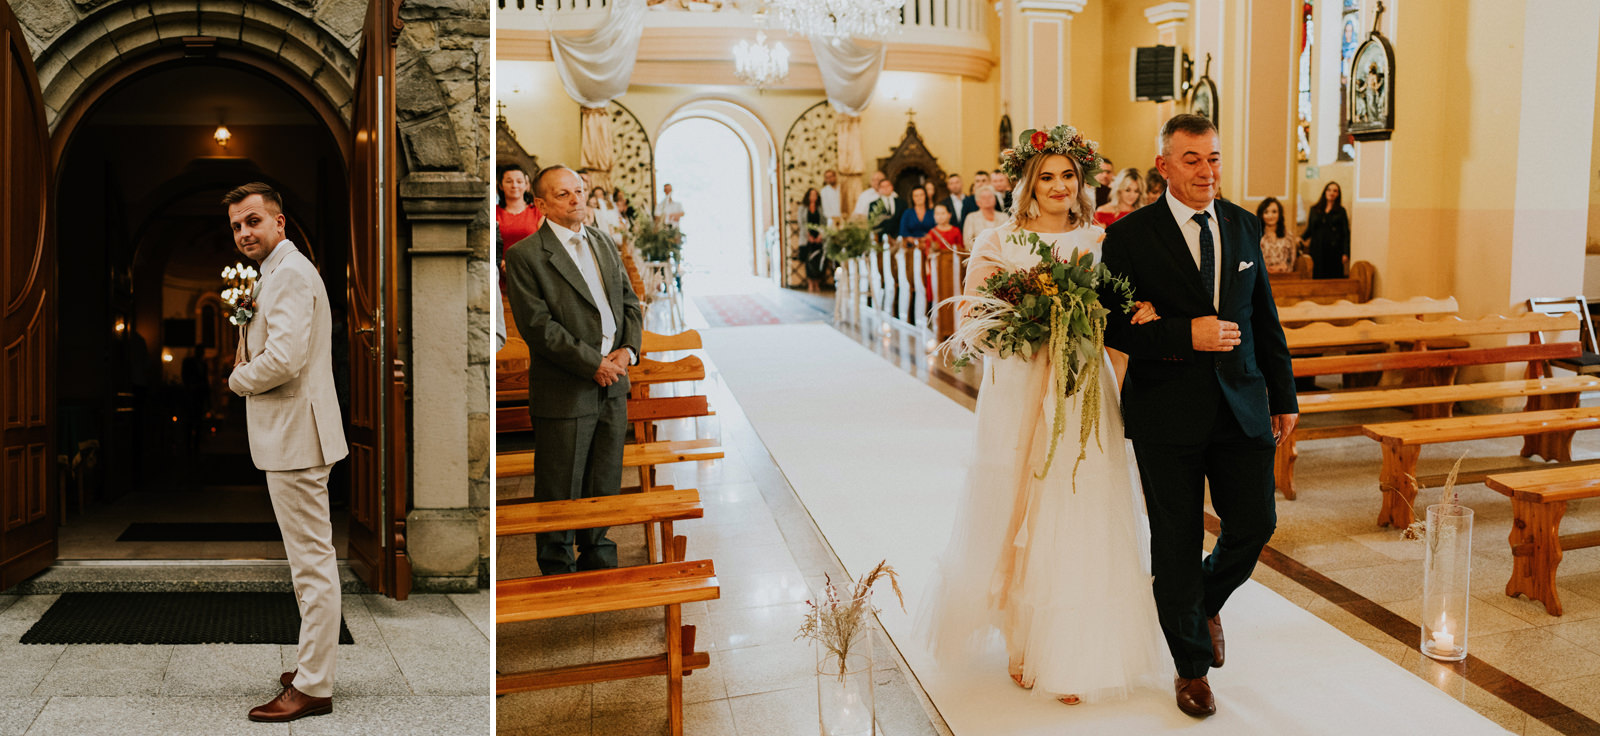 051 kocierz wesele rystykalne forest wedding baciarska chata na kocierzu karol nycz fotograf slubny krakow